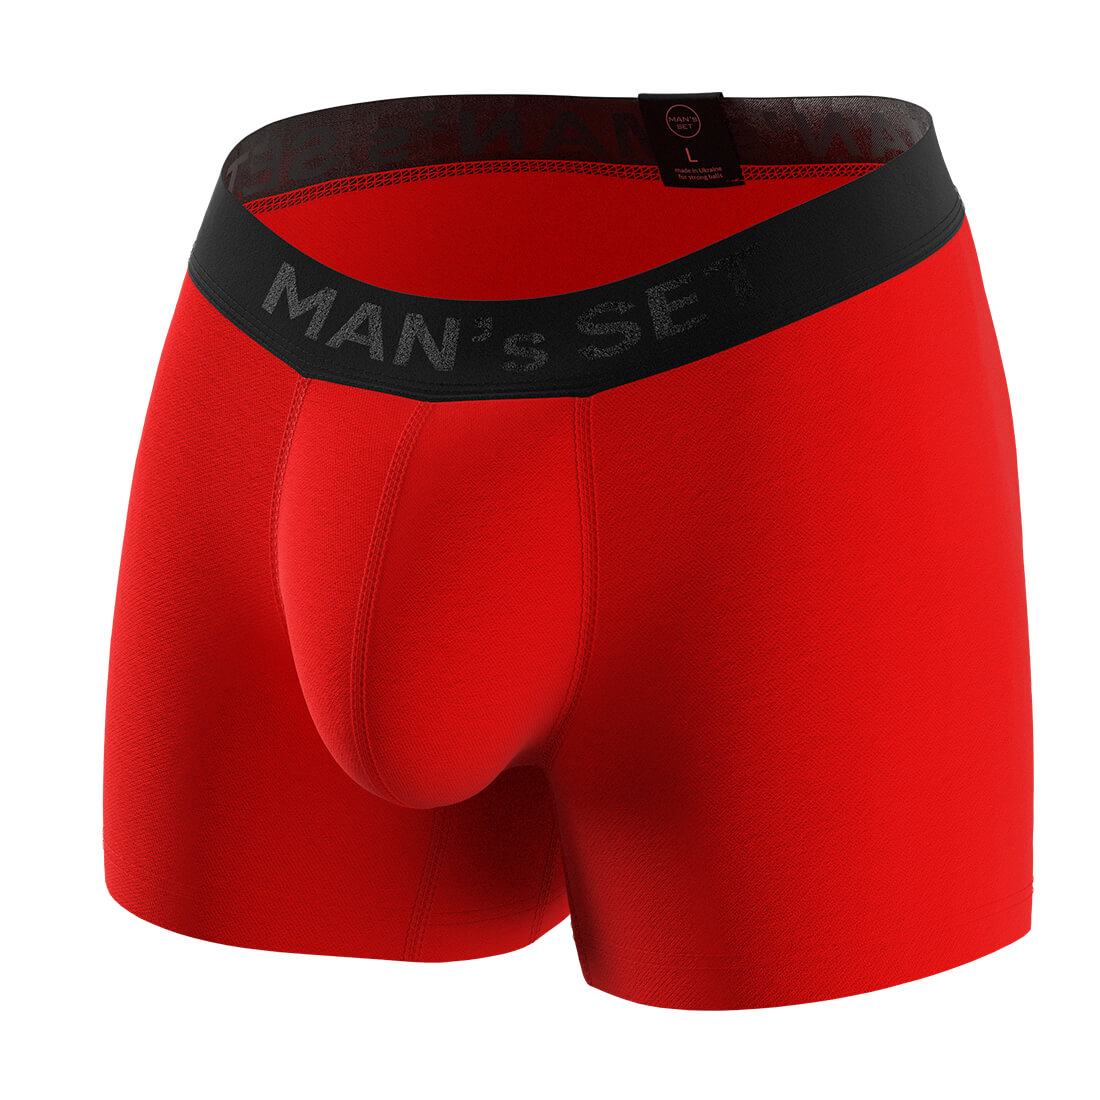 Мужские анатомические боксеры, Intimate, Black Series, красный MansSet - Фото 6